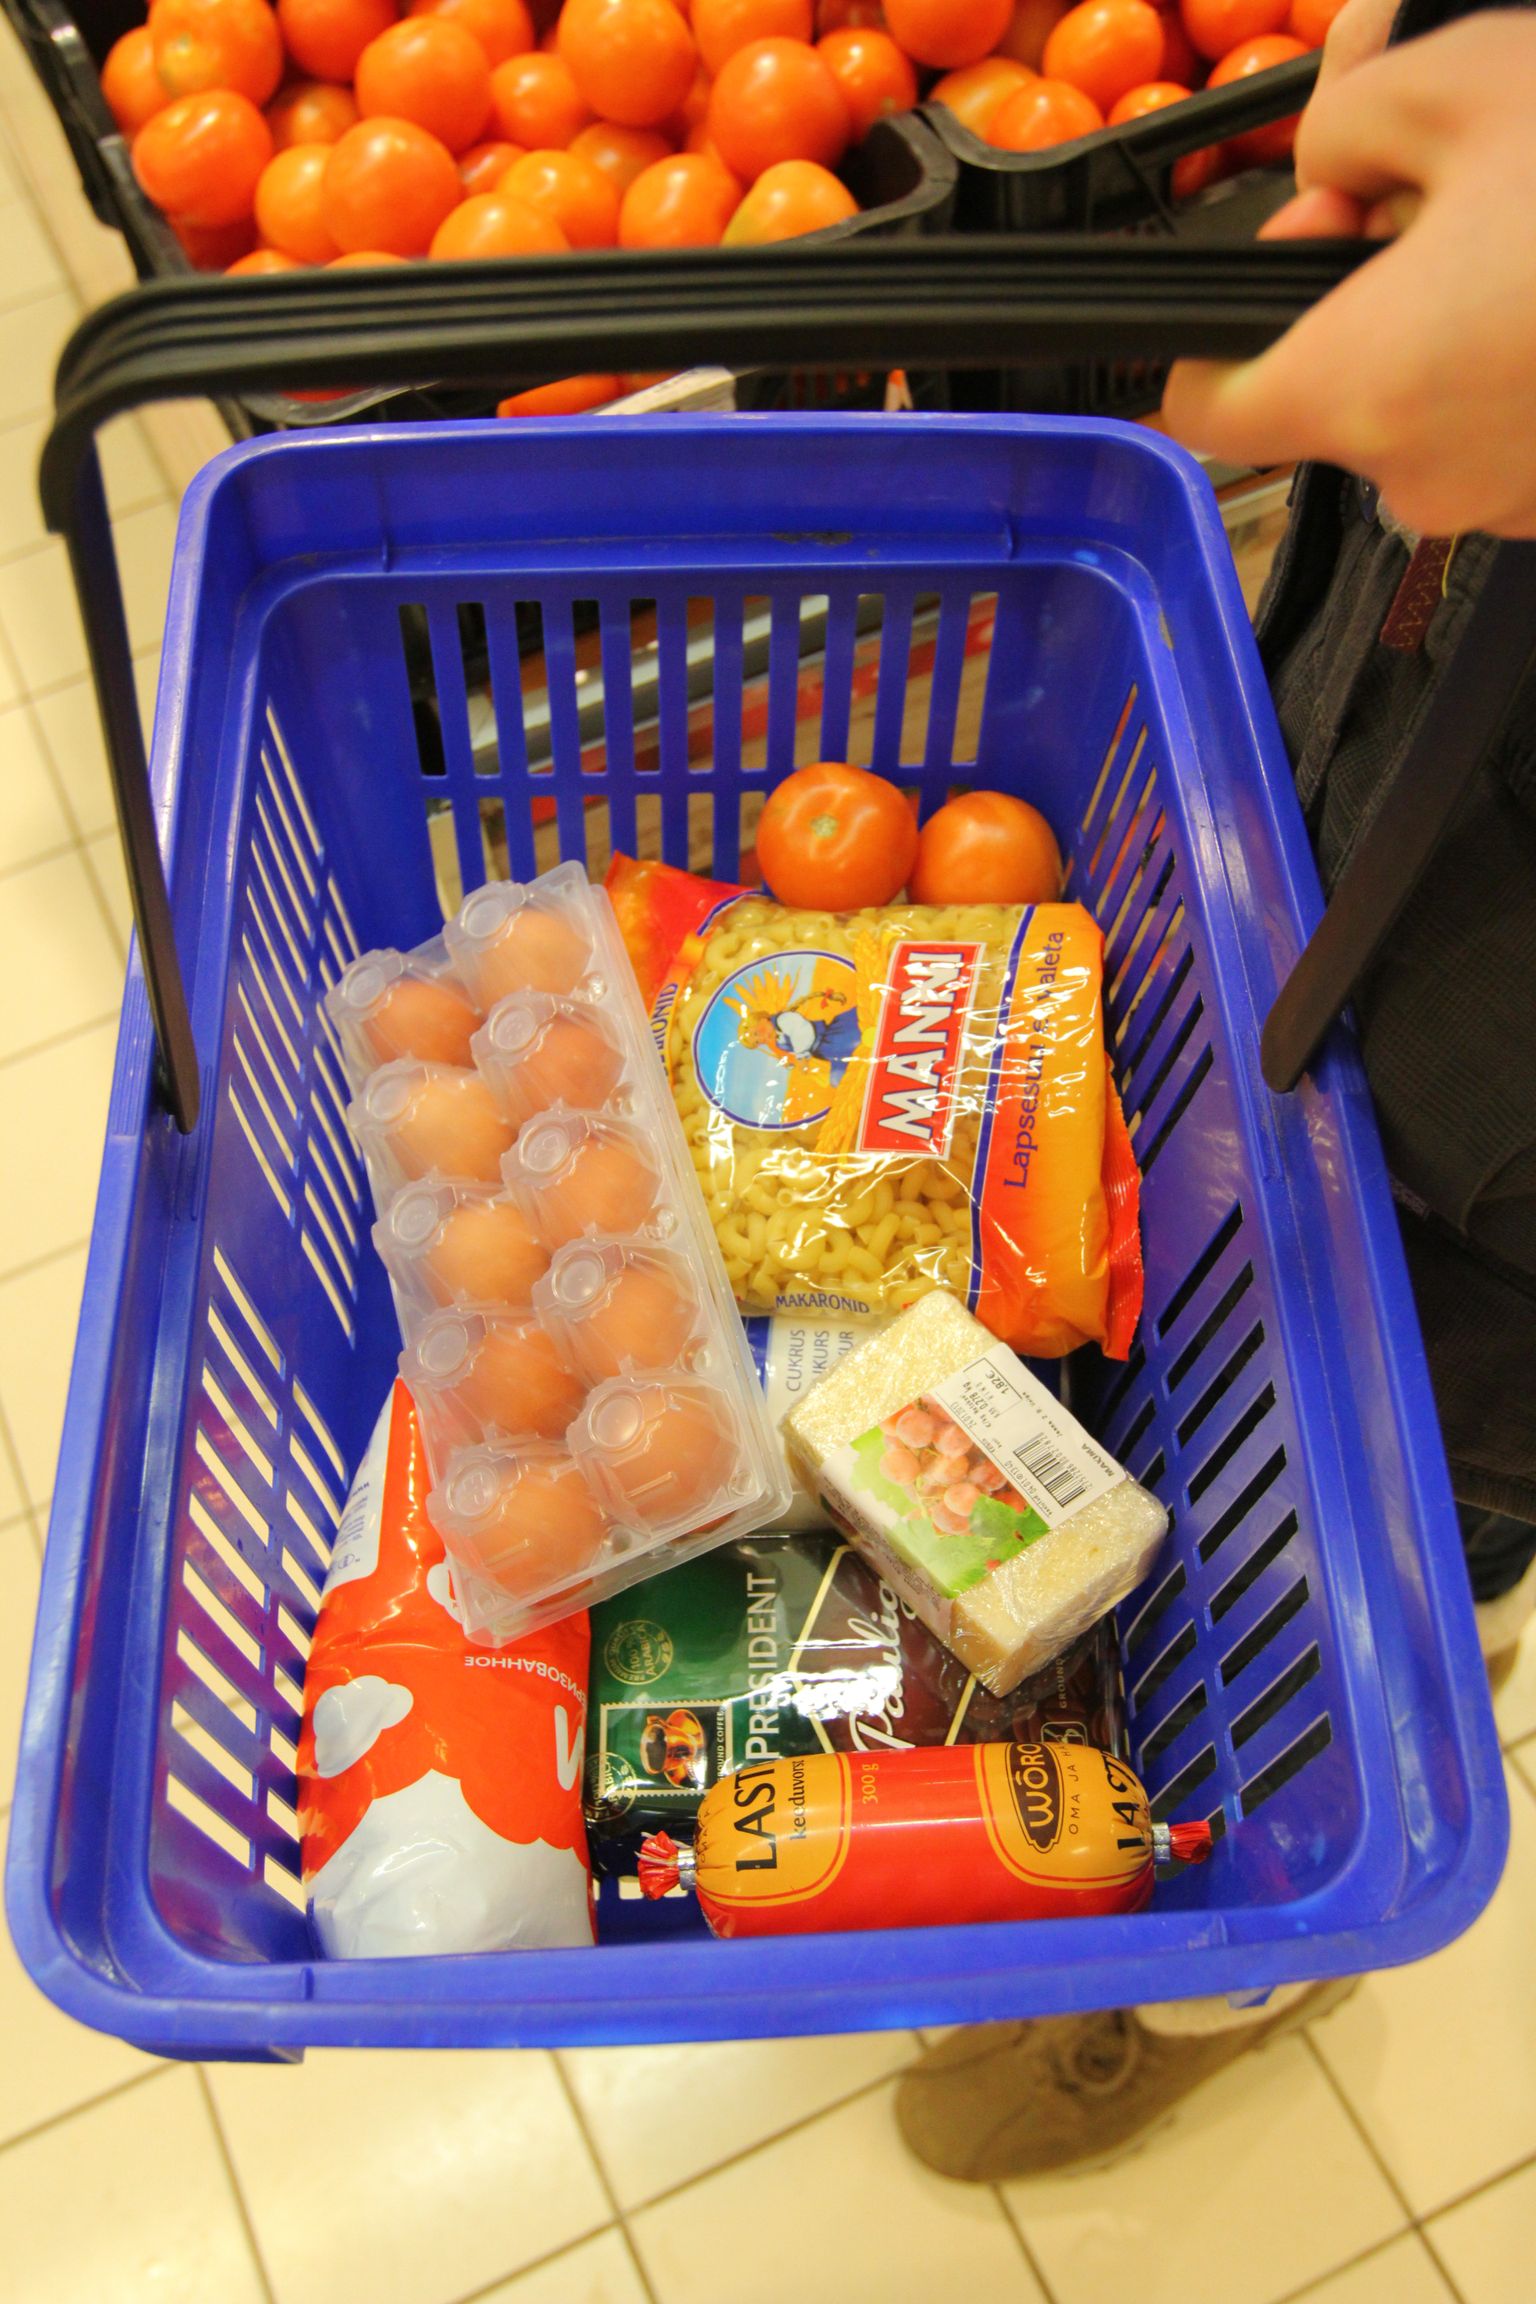 Valga, 18.01.2013
Toidukorv, ostukorv, toidukaubad, kaup, tooted, ostmine.
Foto: Arvo Meeks/Valgamaalane